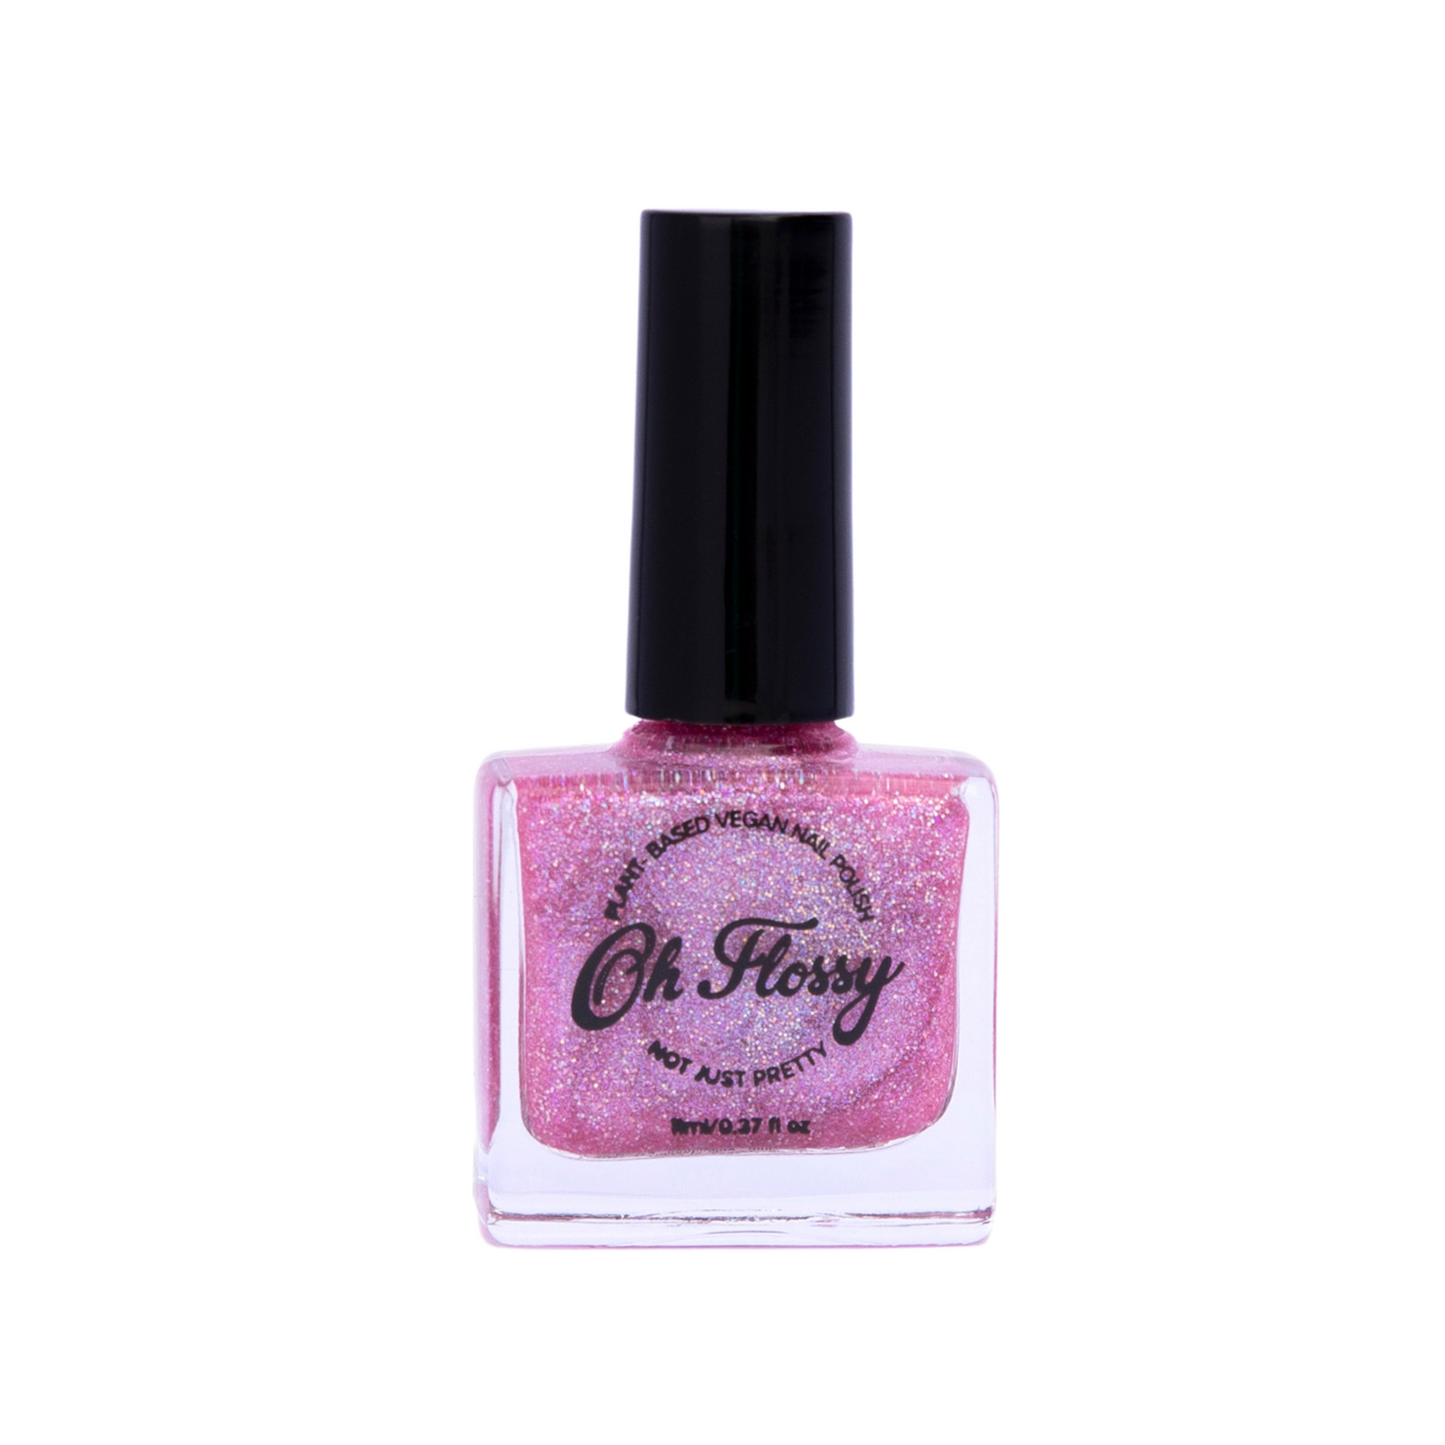 Oh Flossy Nail Polish - Joyful - Pink Glitter